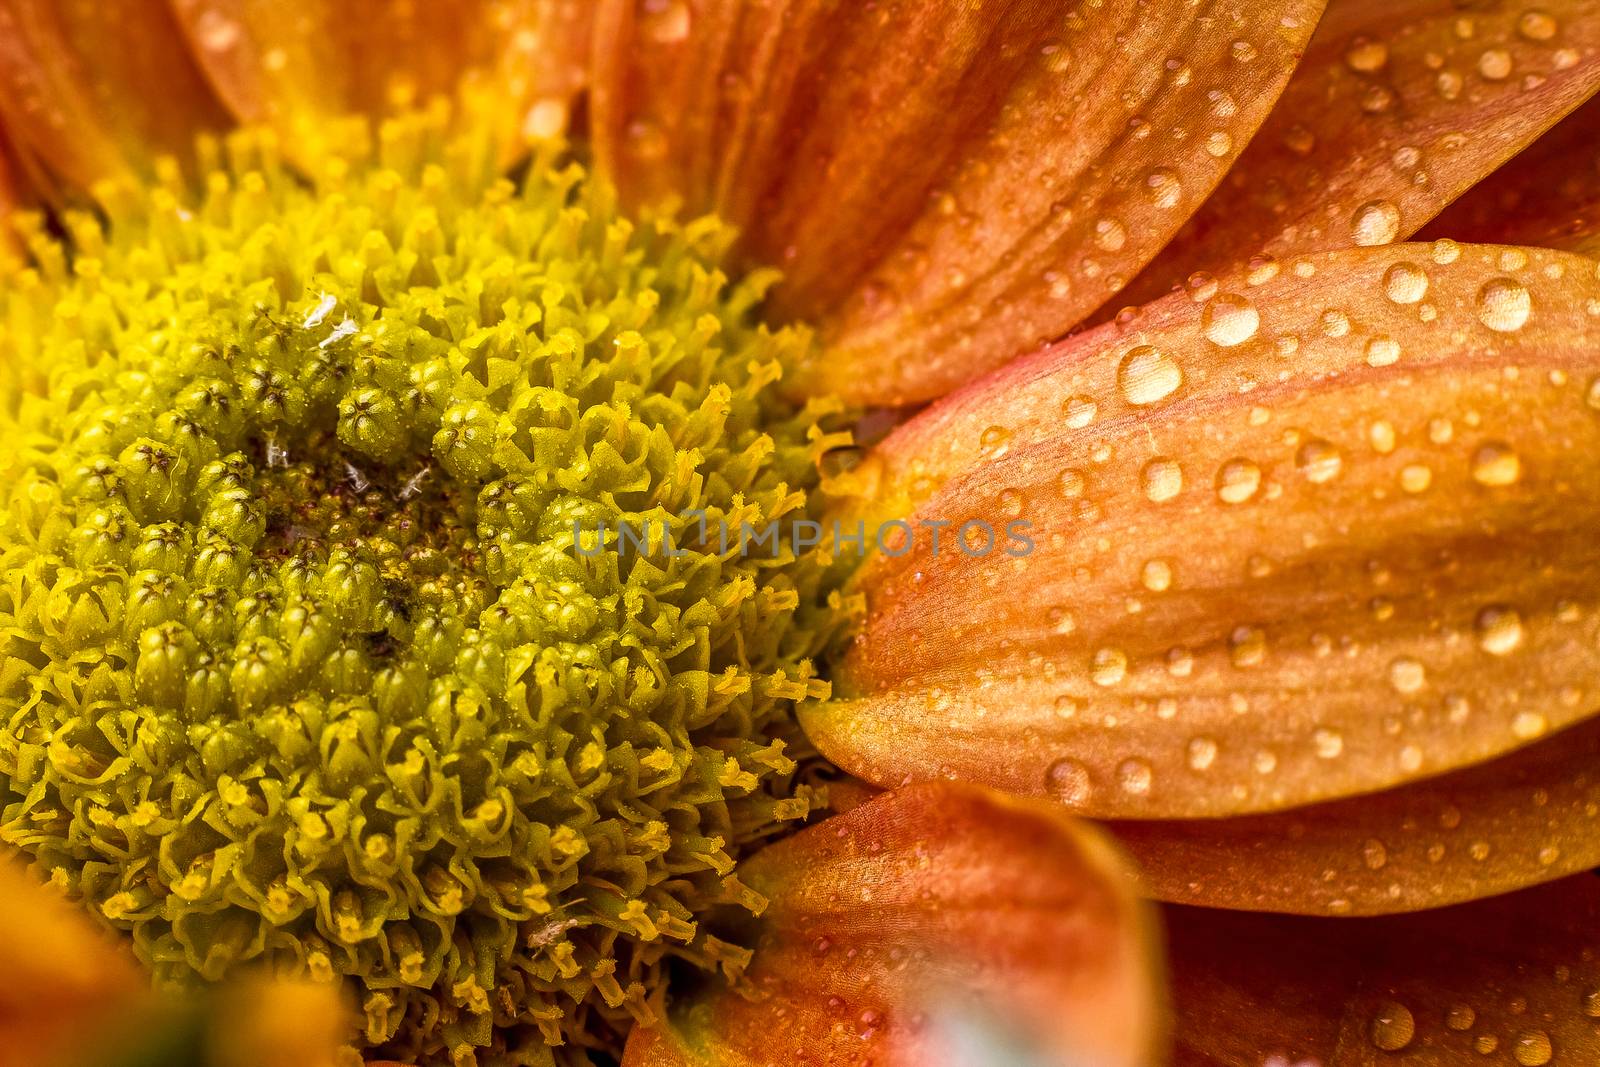 Drops on orange flower by dynamicfoto